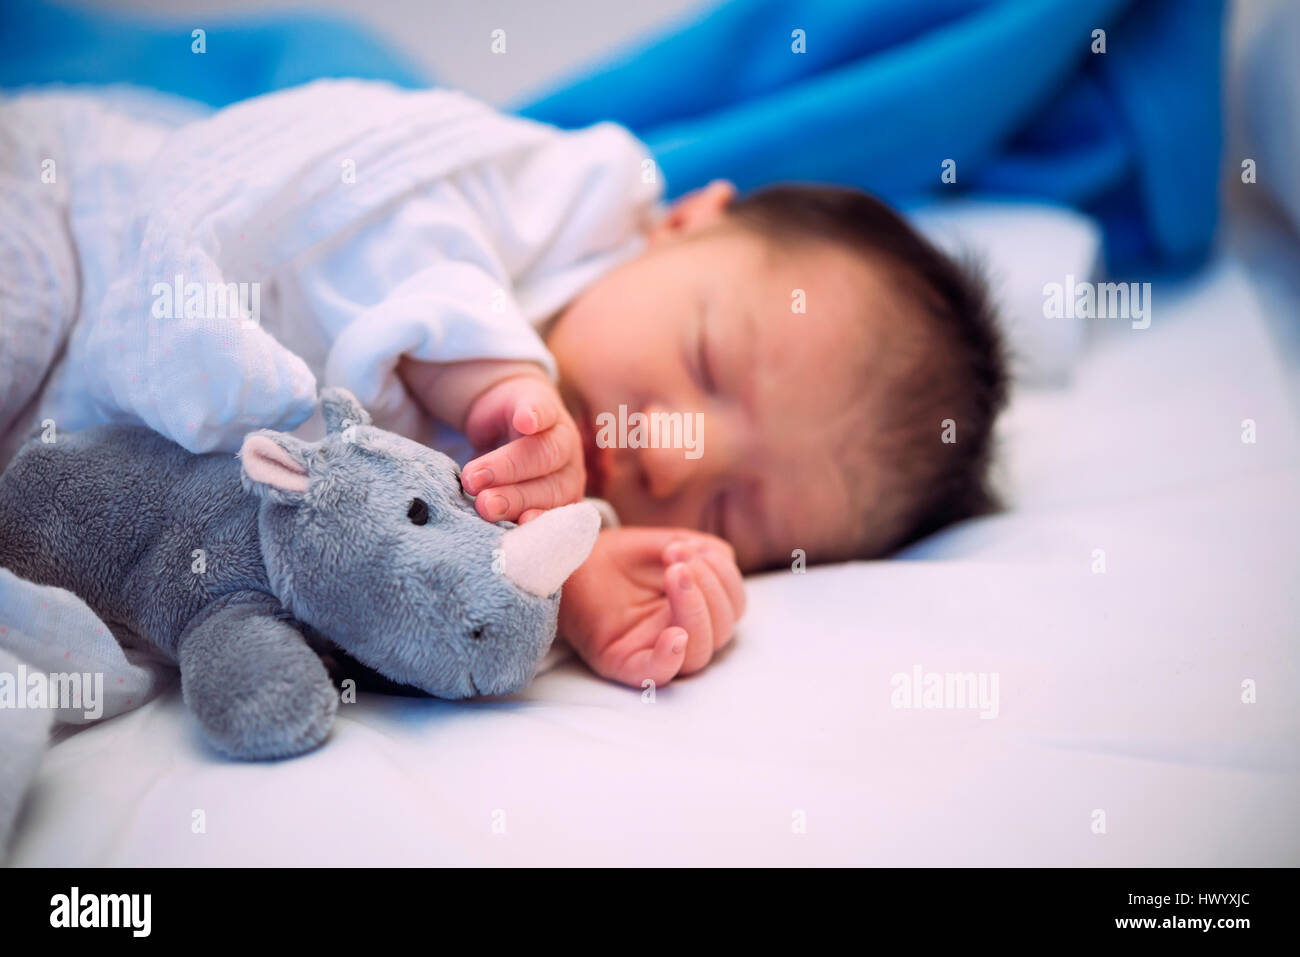 Bébé nouveau-né de dormir dans le lit avec un rhinocéros en peluche Banque D'Images